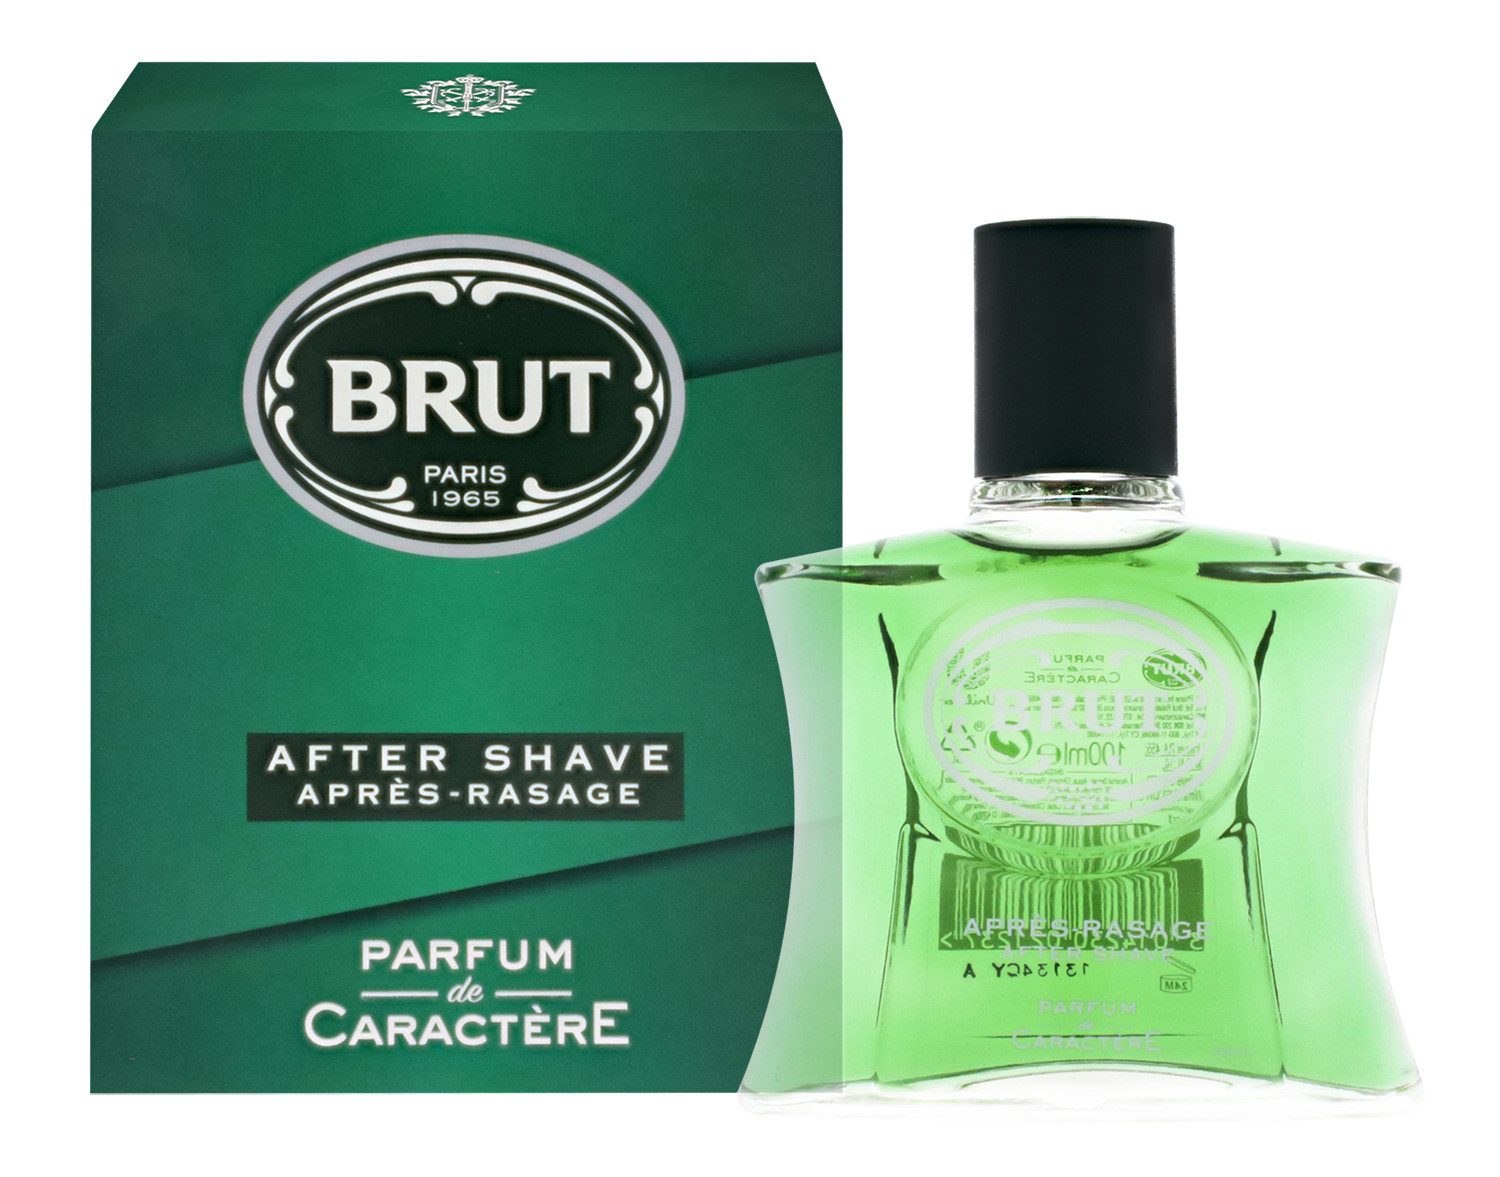 Brut After-Shave 3x Brut Original Apres-Rasage Aftershave je 100ml Rasierwasser for man